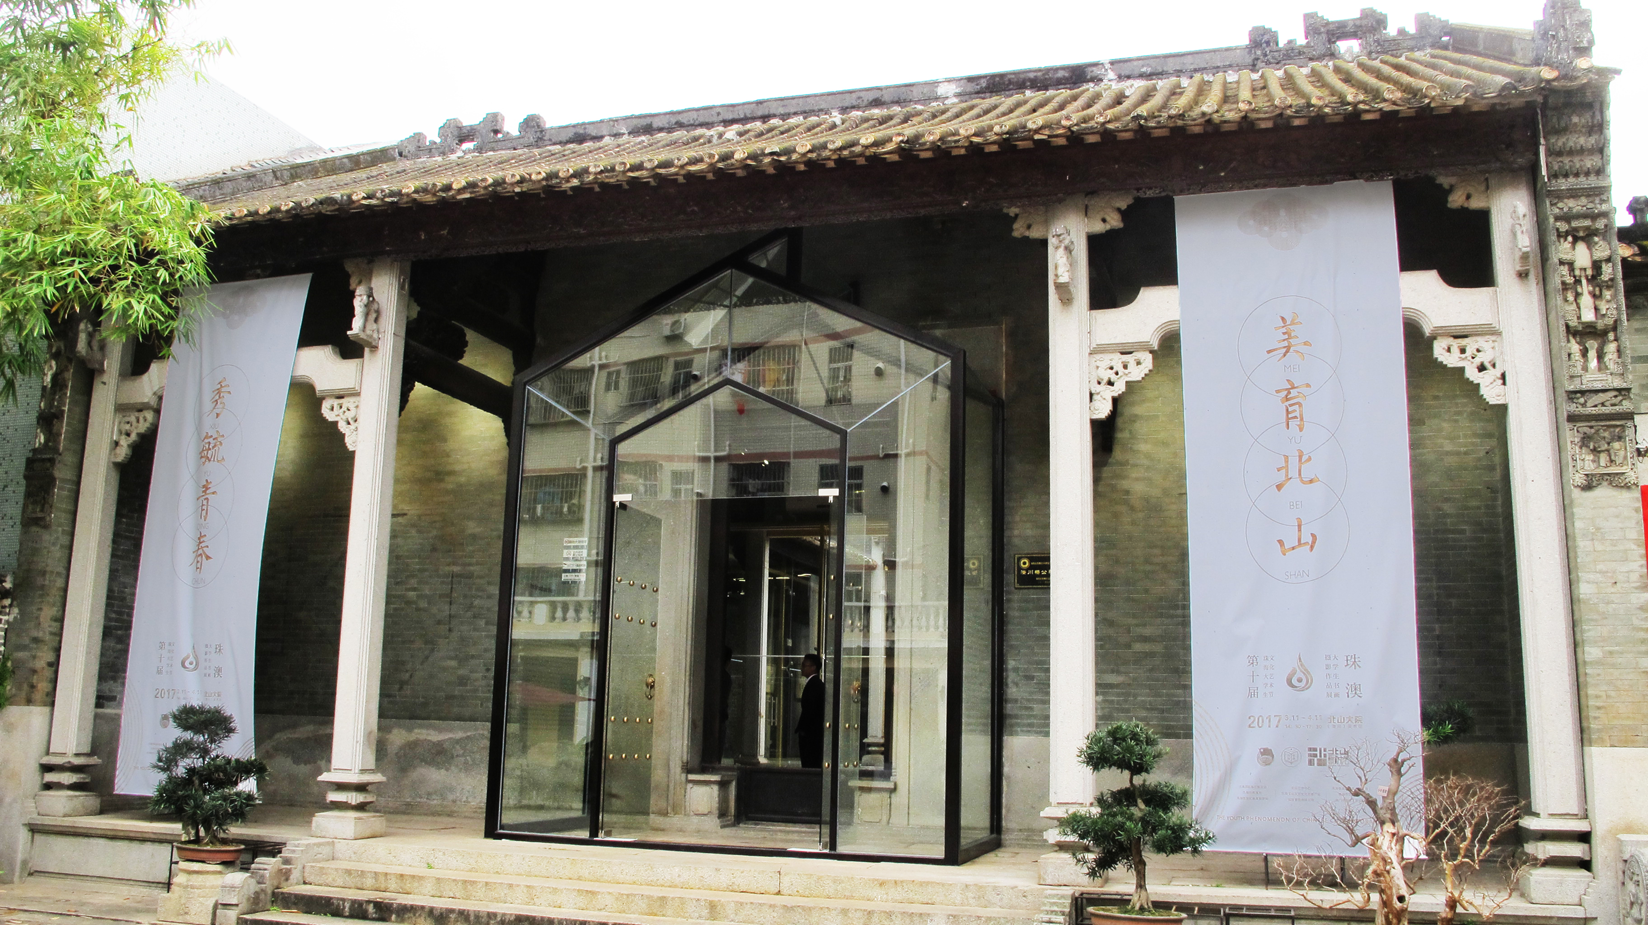 Chengchuan Art Gallery renovation